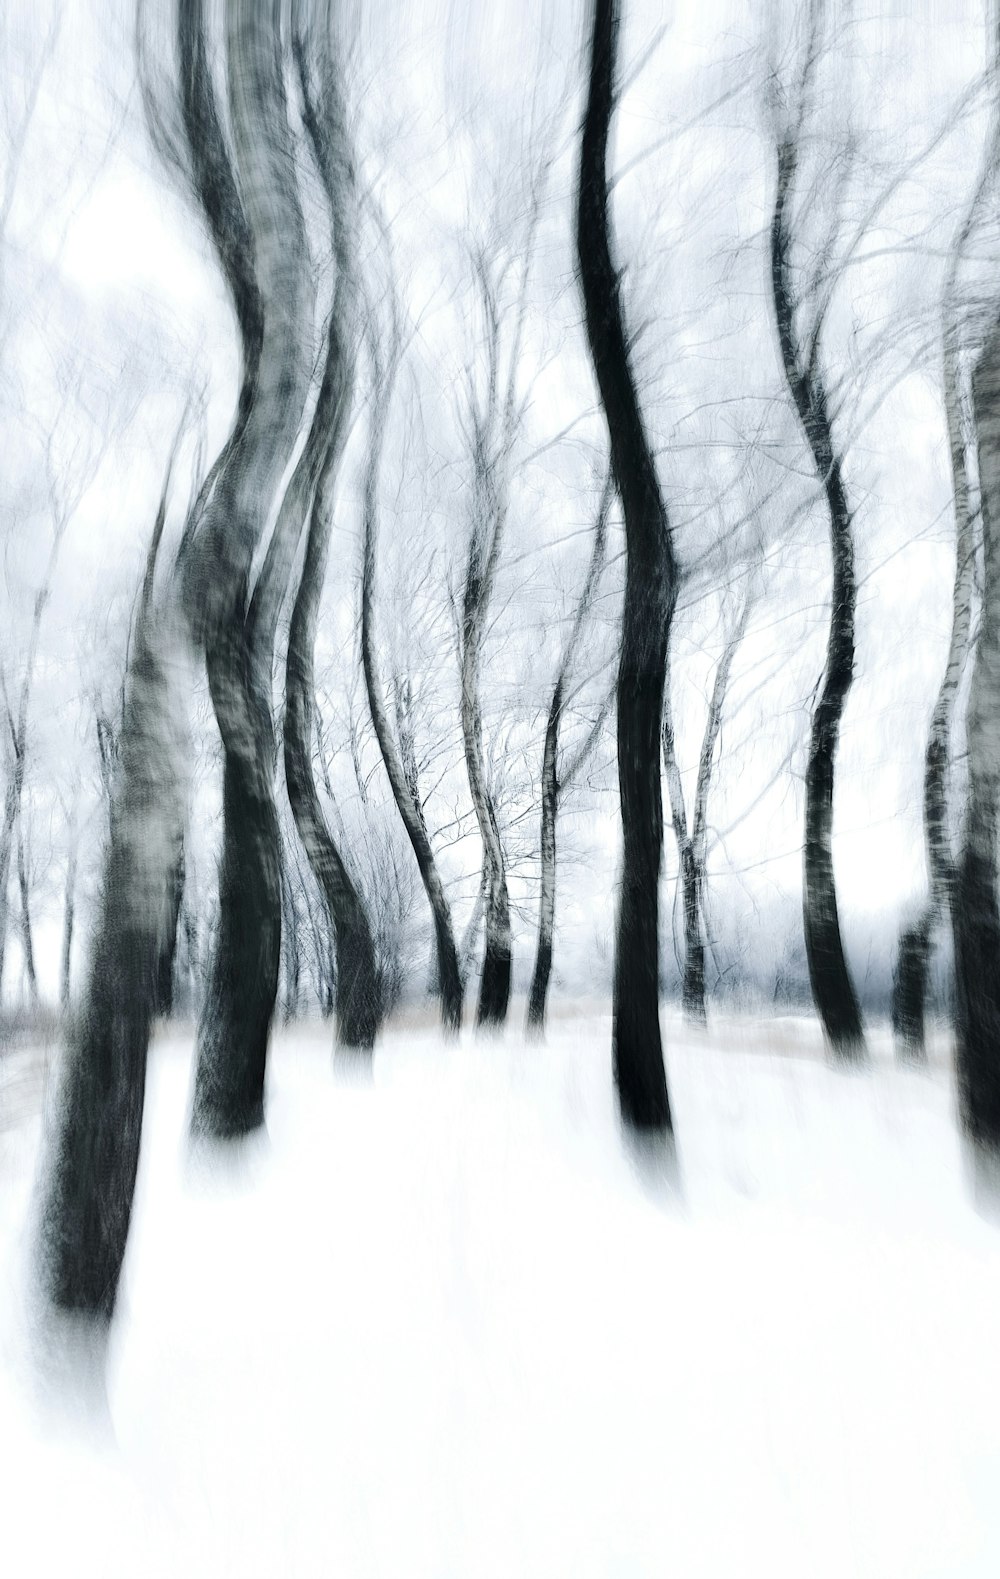 Una foto borrosa de árboles en la nieve